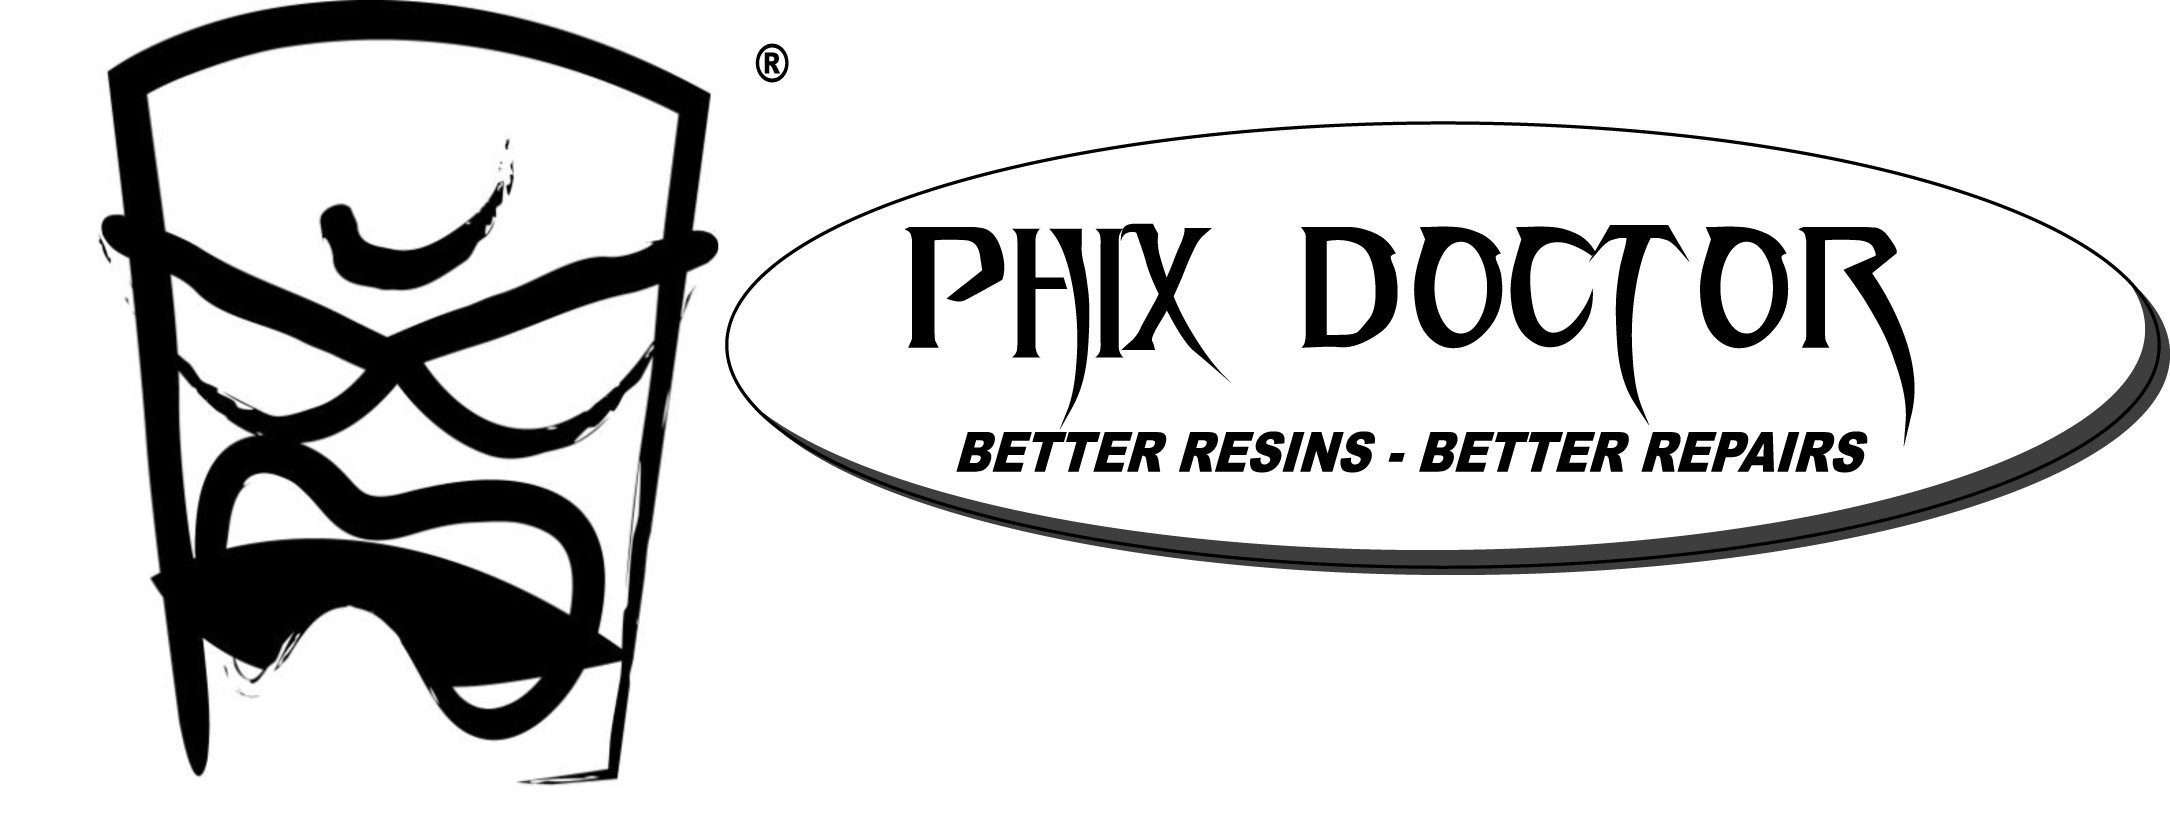 Phix Doctor Ding Repair